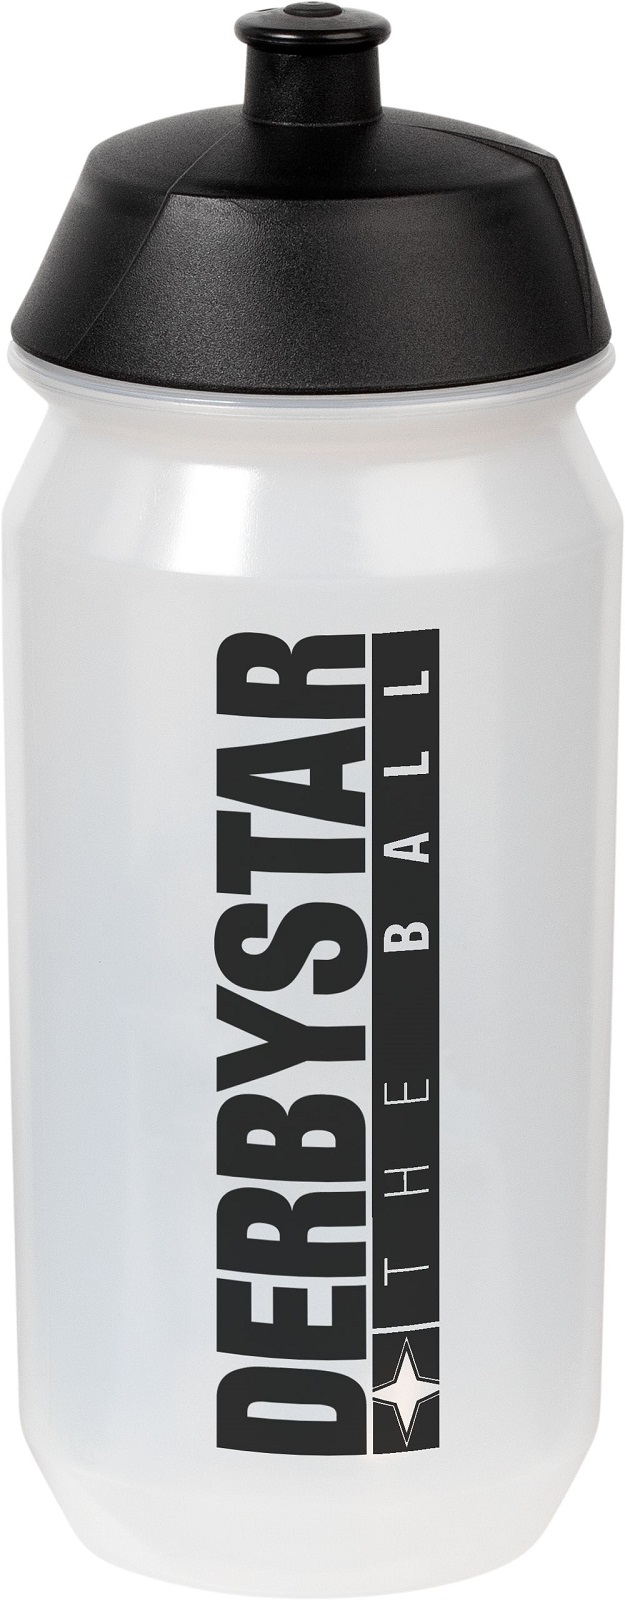 Derbystar Trinkflasche Bio-Bottle 0,7l